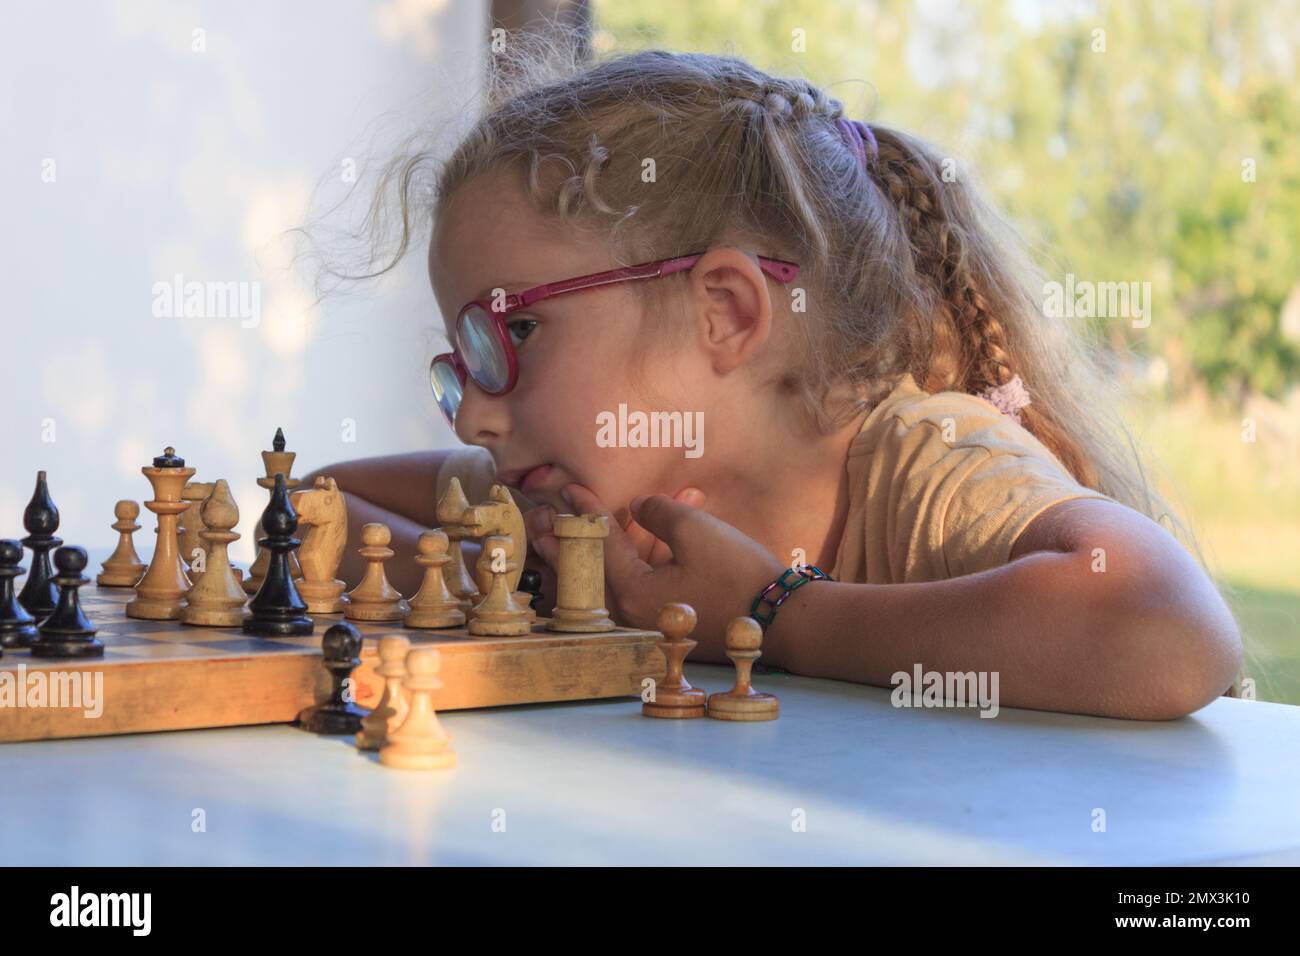 Ein kleines Mädchen mit langen blonden Haaren und Brille spielt Schach Stockfoto